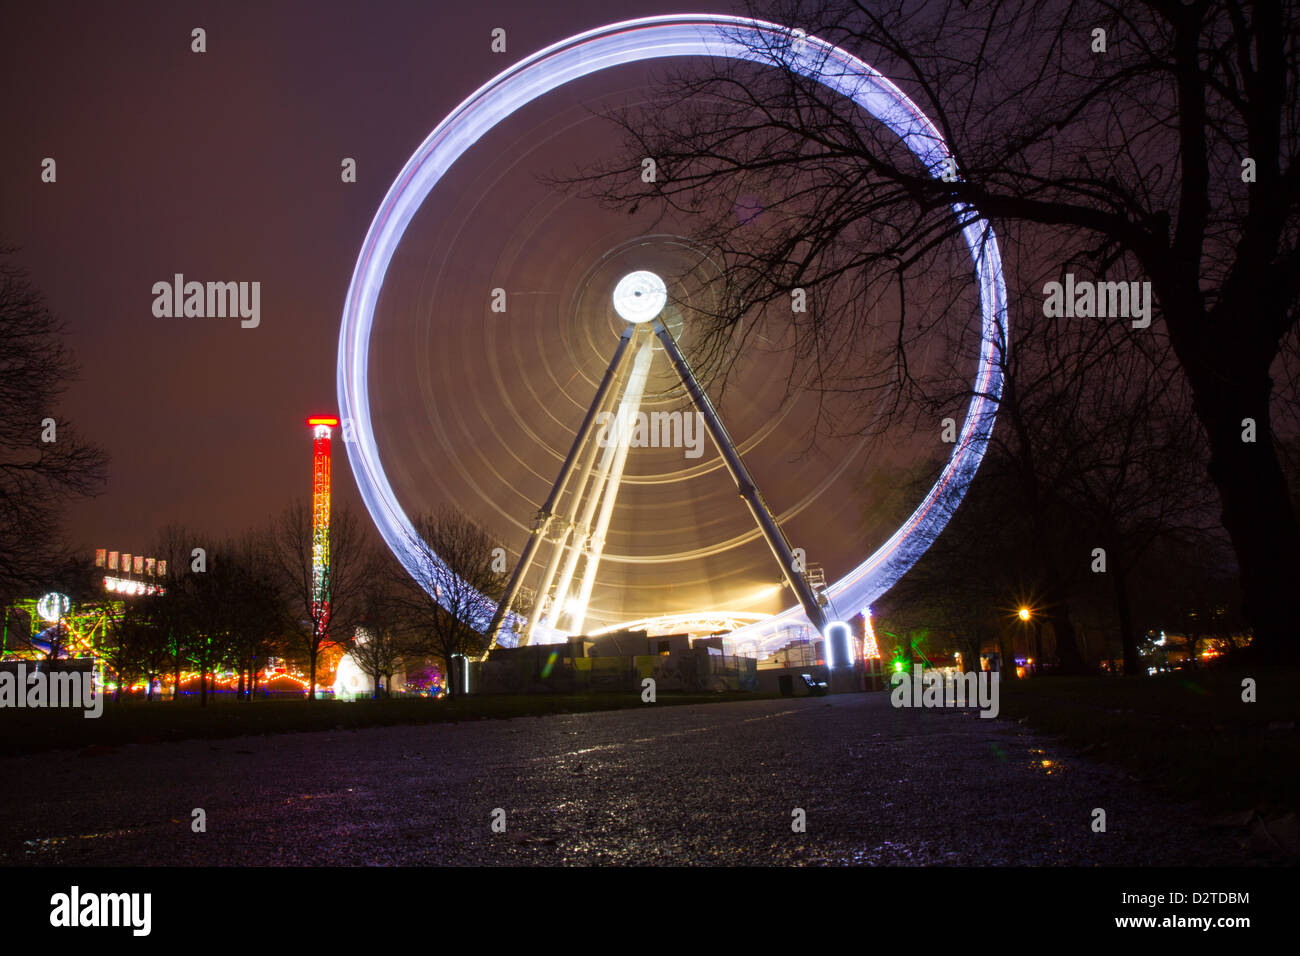 La roue de paris en hiver wonderland london Banque D'Images